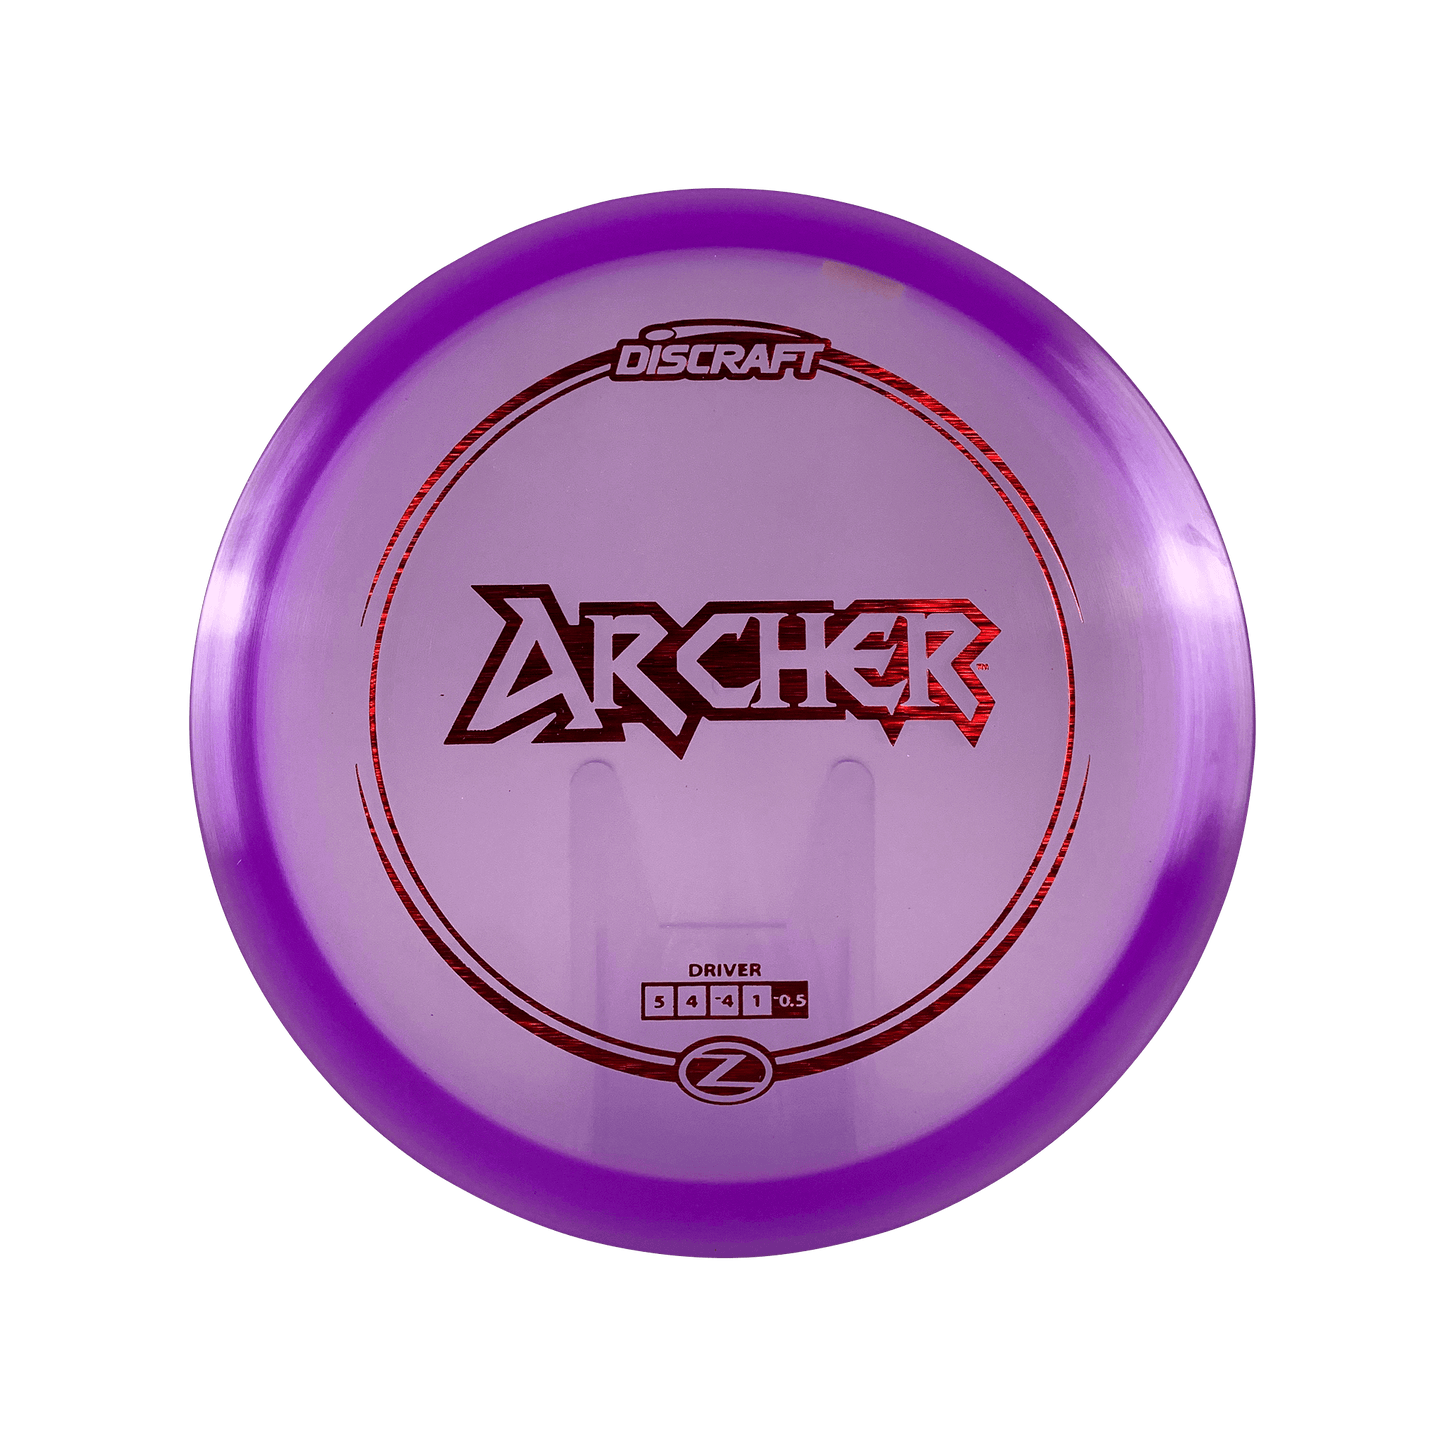 Z Archer Disc Discraft purple 175 